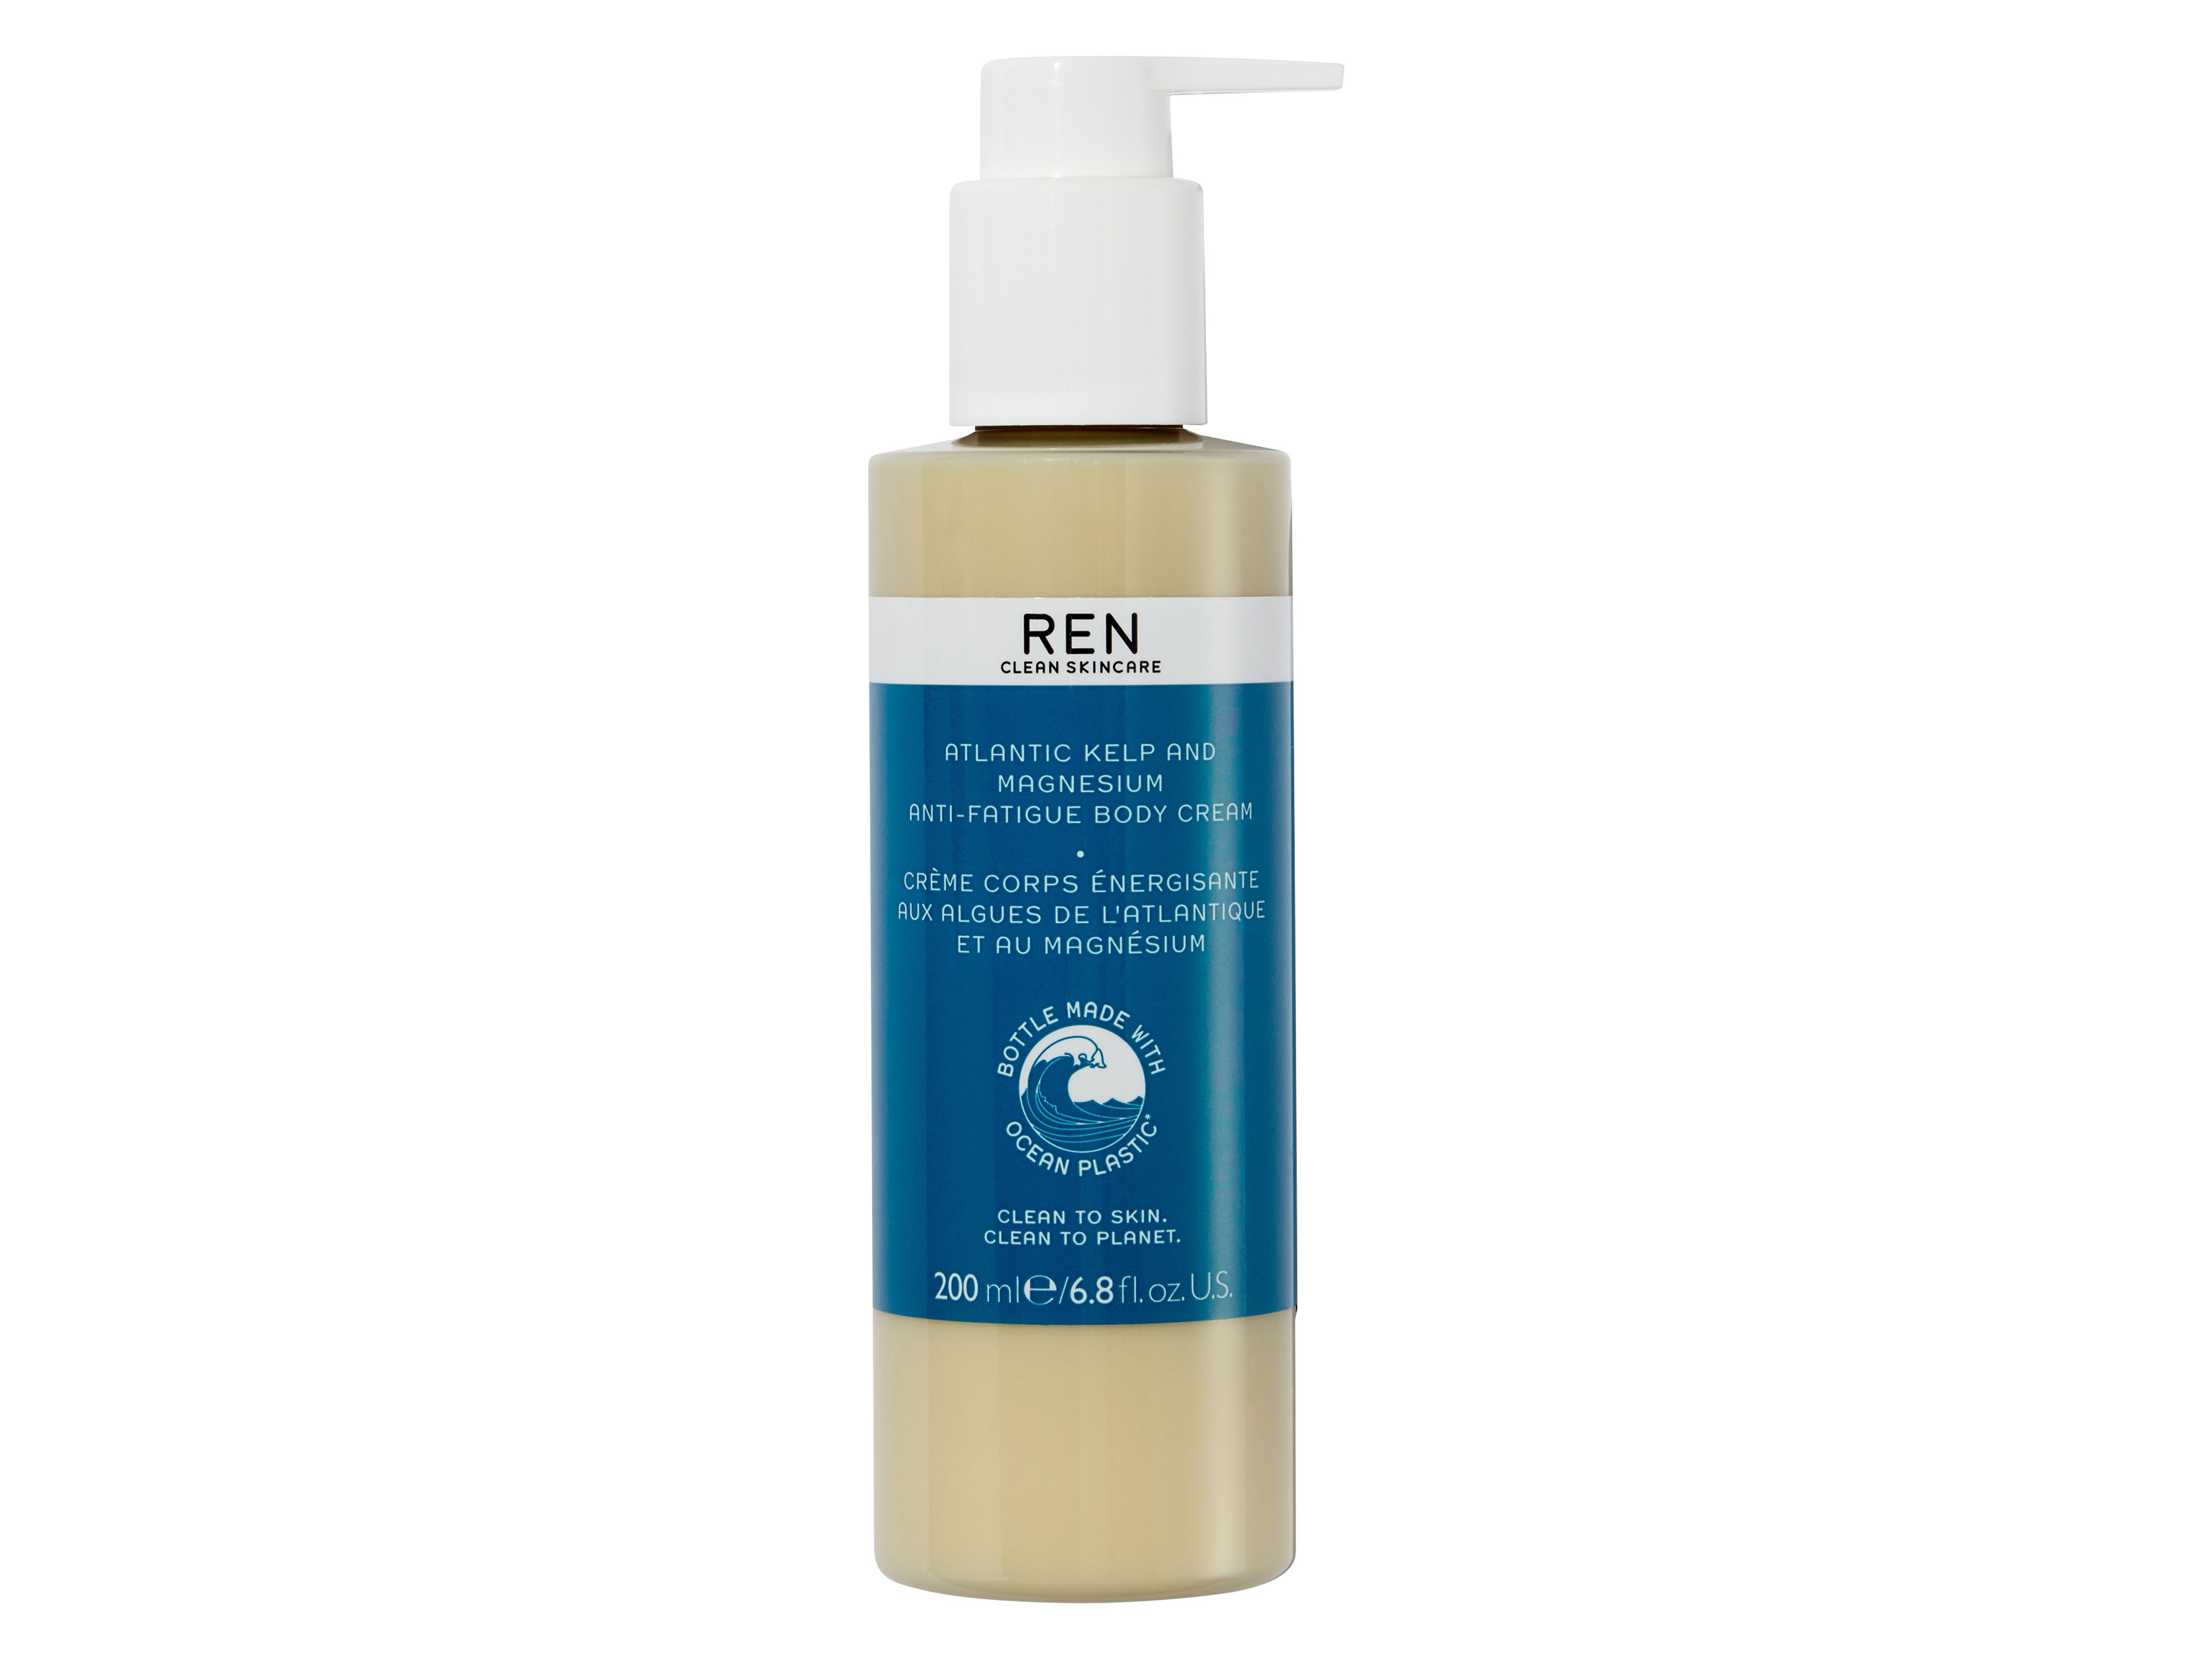 REN Atlantic Kelp And Magnesium Anti-Fatigue Body Cream, 200 ml